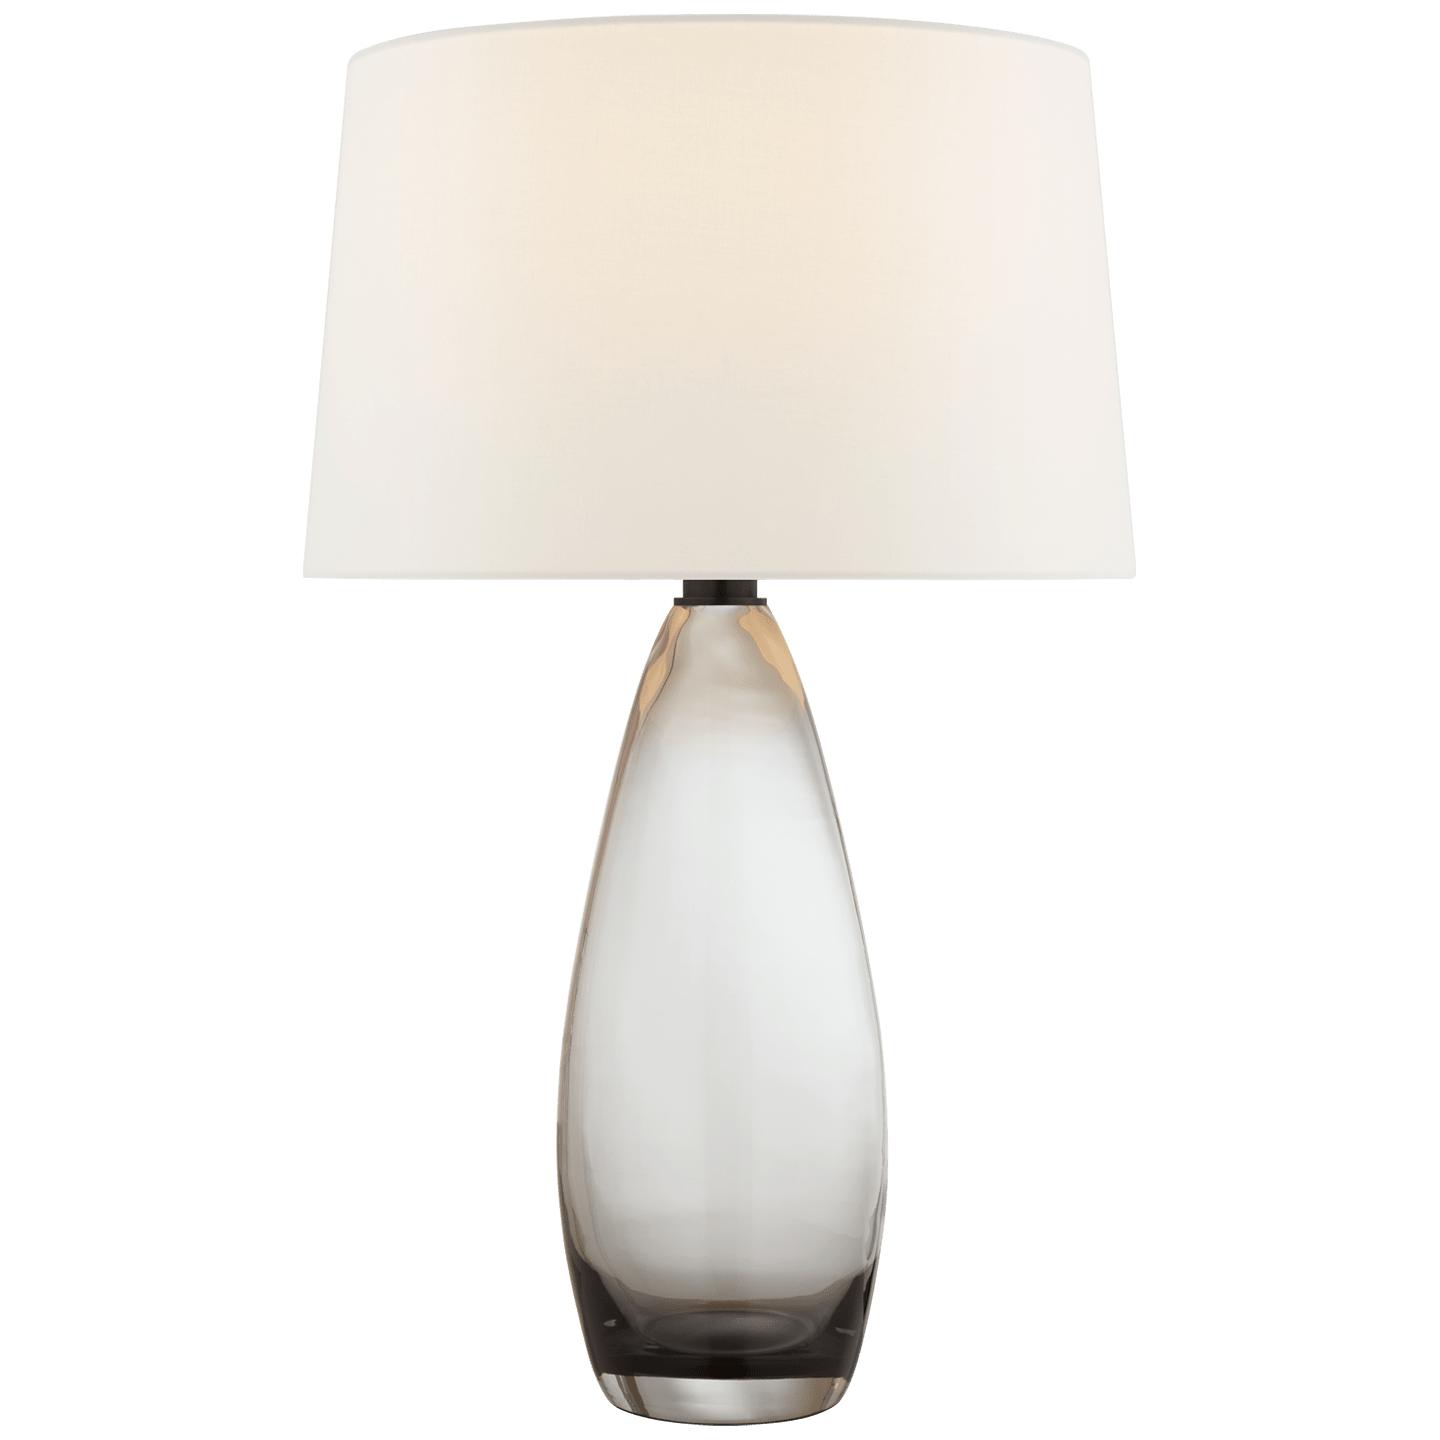 Купить Настольная лампа Myla Large Tall Table Lamp в интернет-магазине roooms.ru